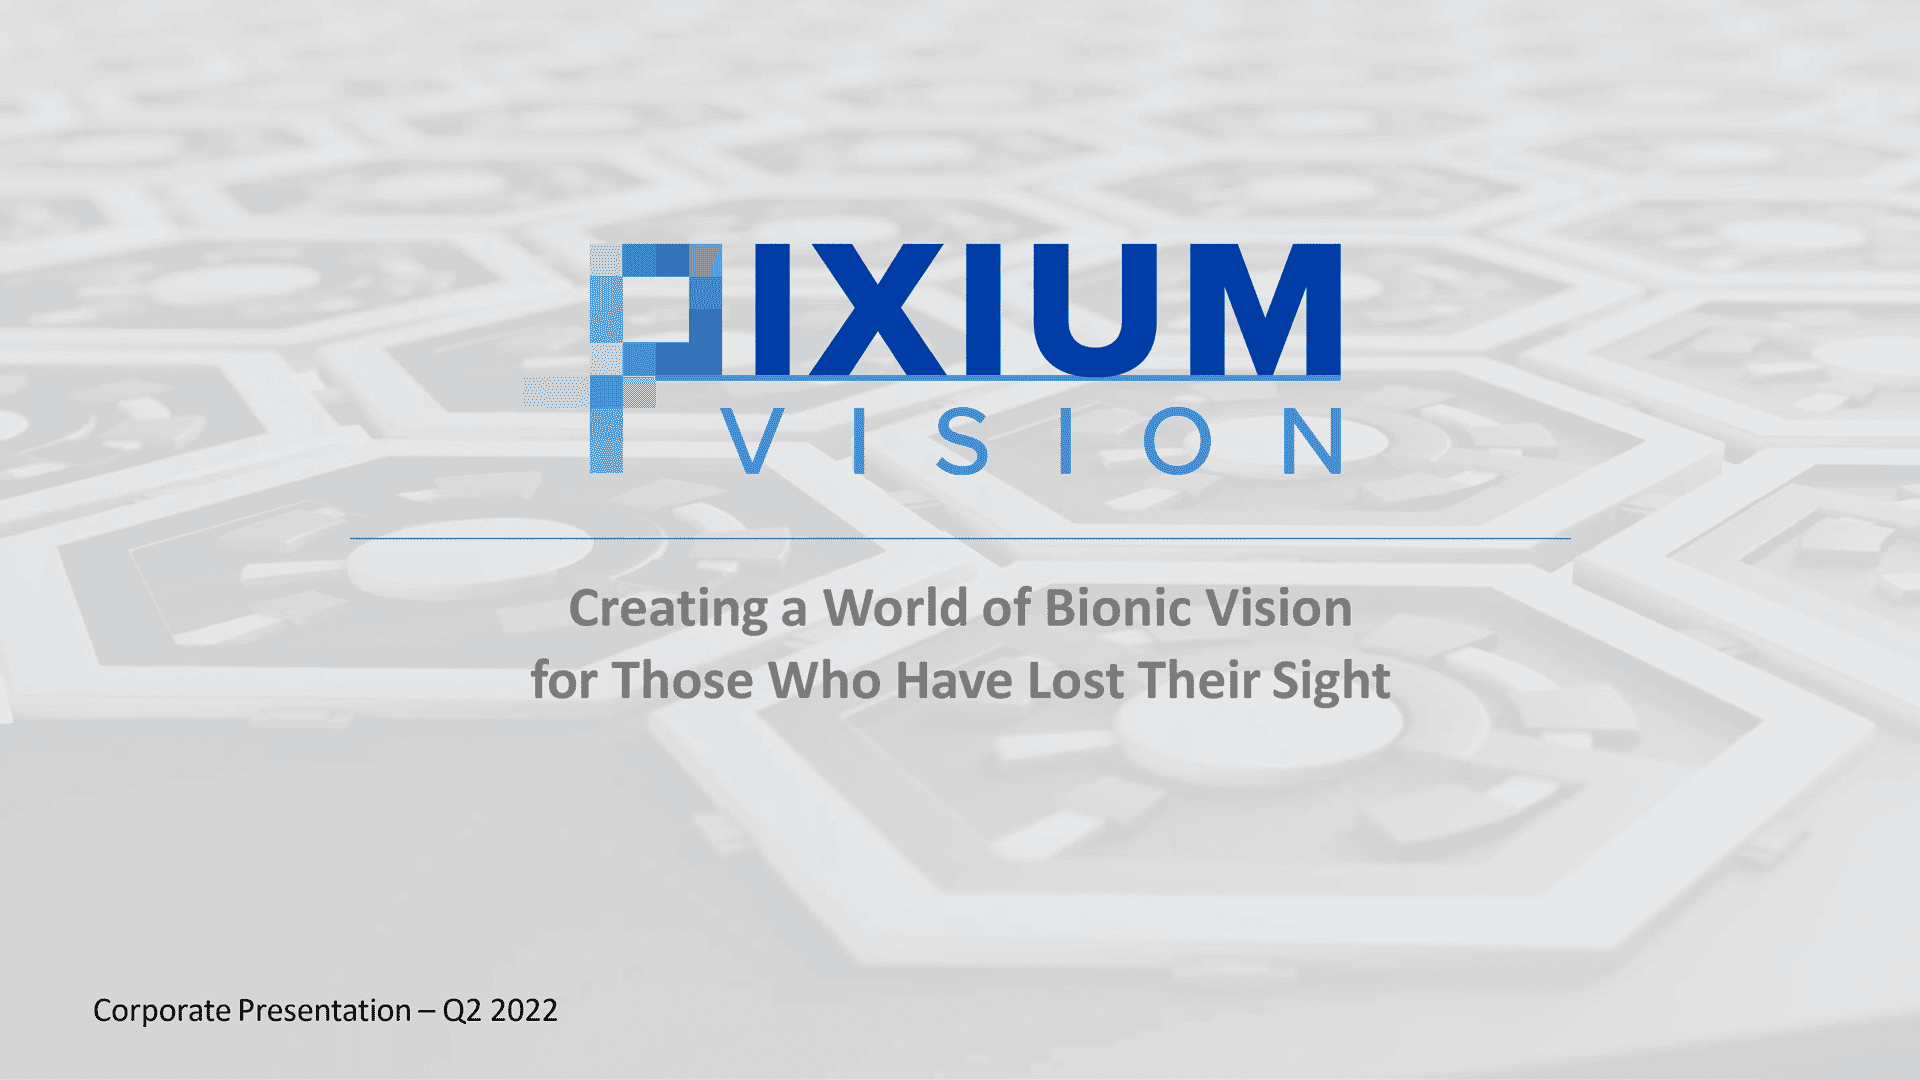 Corporate Presentation Pixium Vision 2022